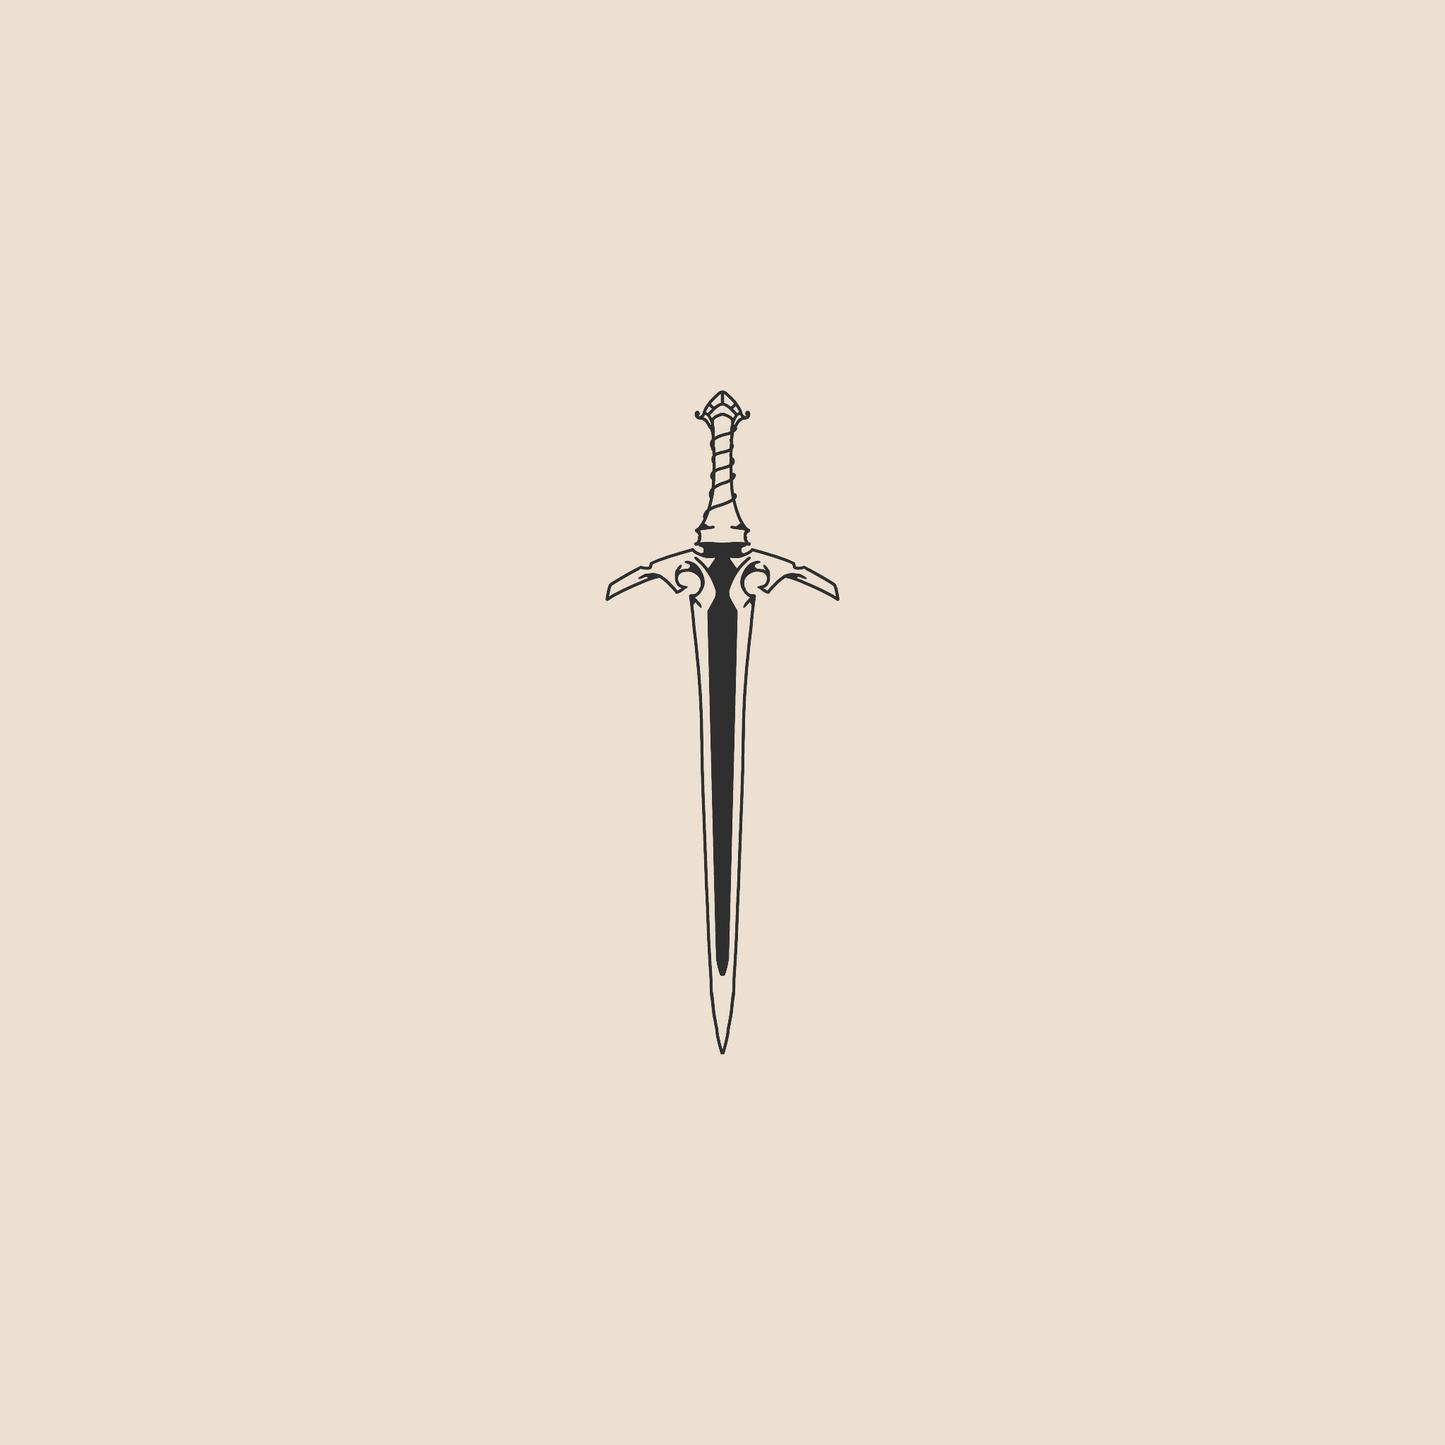 Lost sword - 799